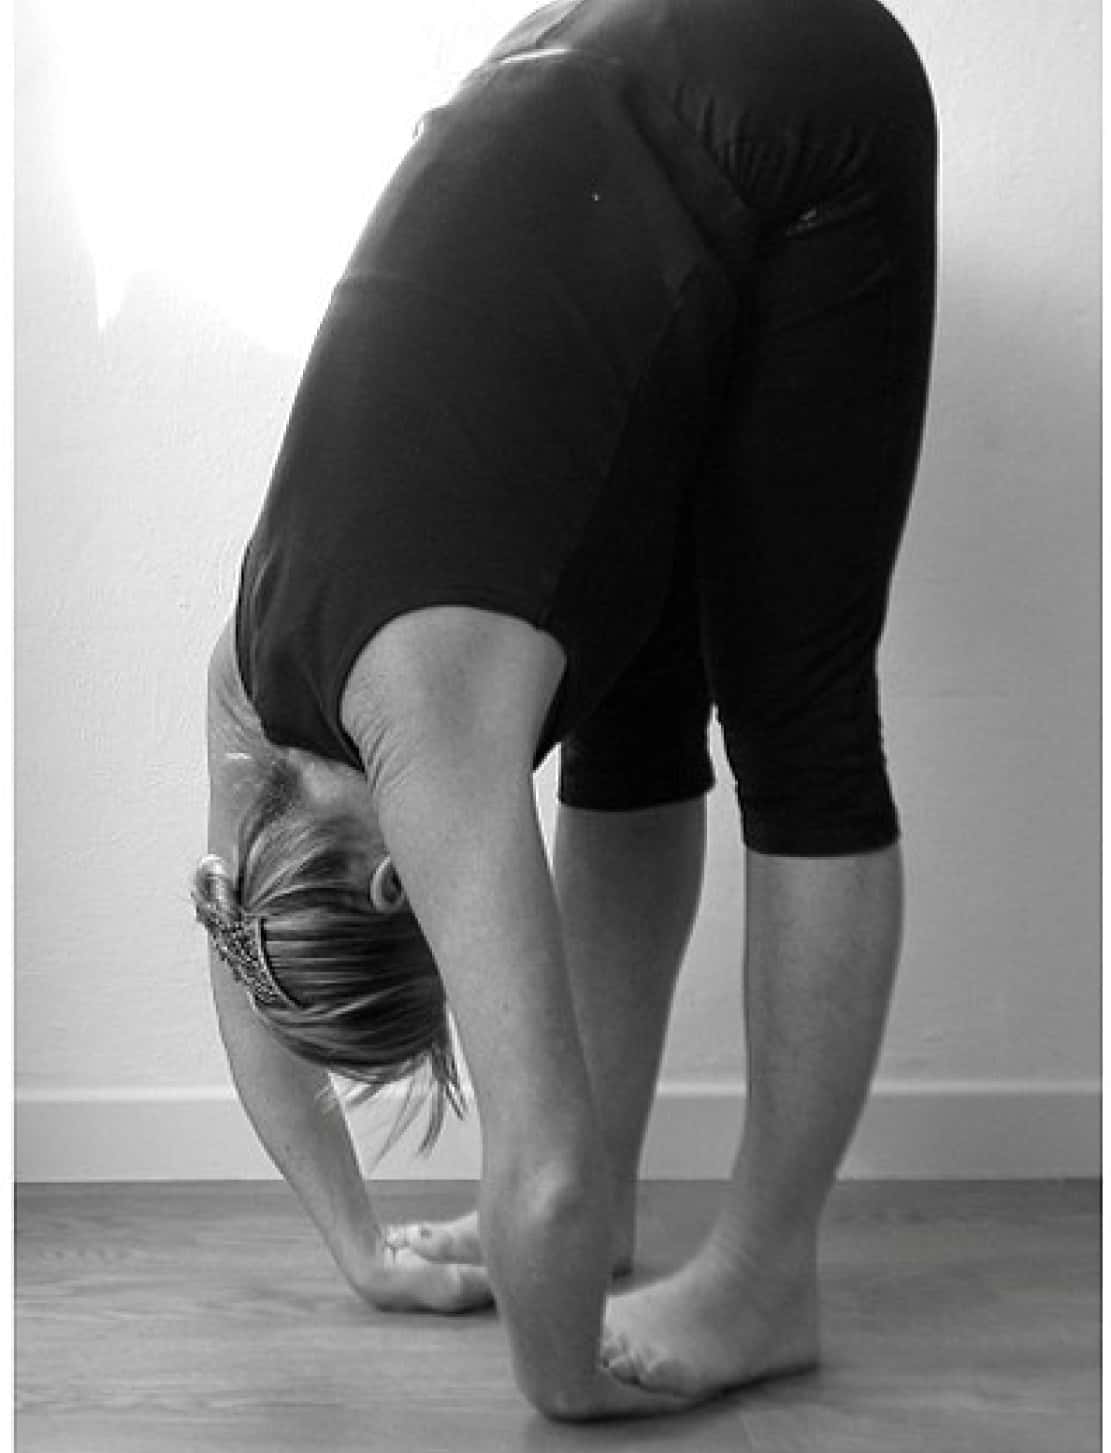 Yoga Poses To Increase Height: घरीच करा उंची वाढवण्यासाठी आणि पॉश्चर  सुधारण्यासाठी 'ही' 7 योगासने | Seven Best Yoga Poses to Improve Posture and  Look Taller in Marathi